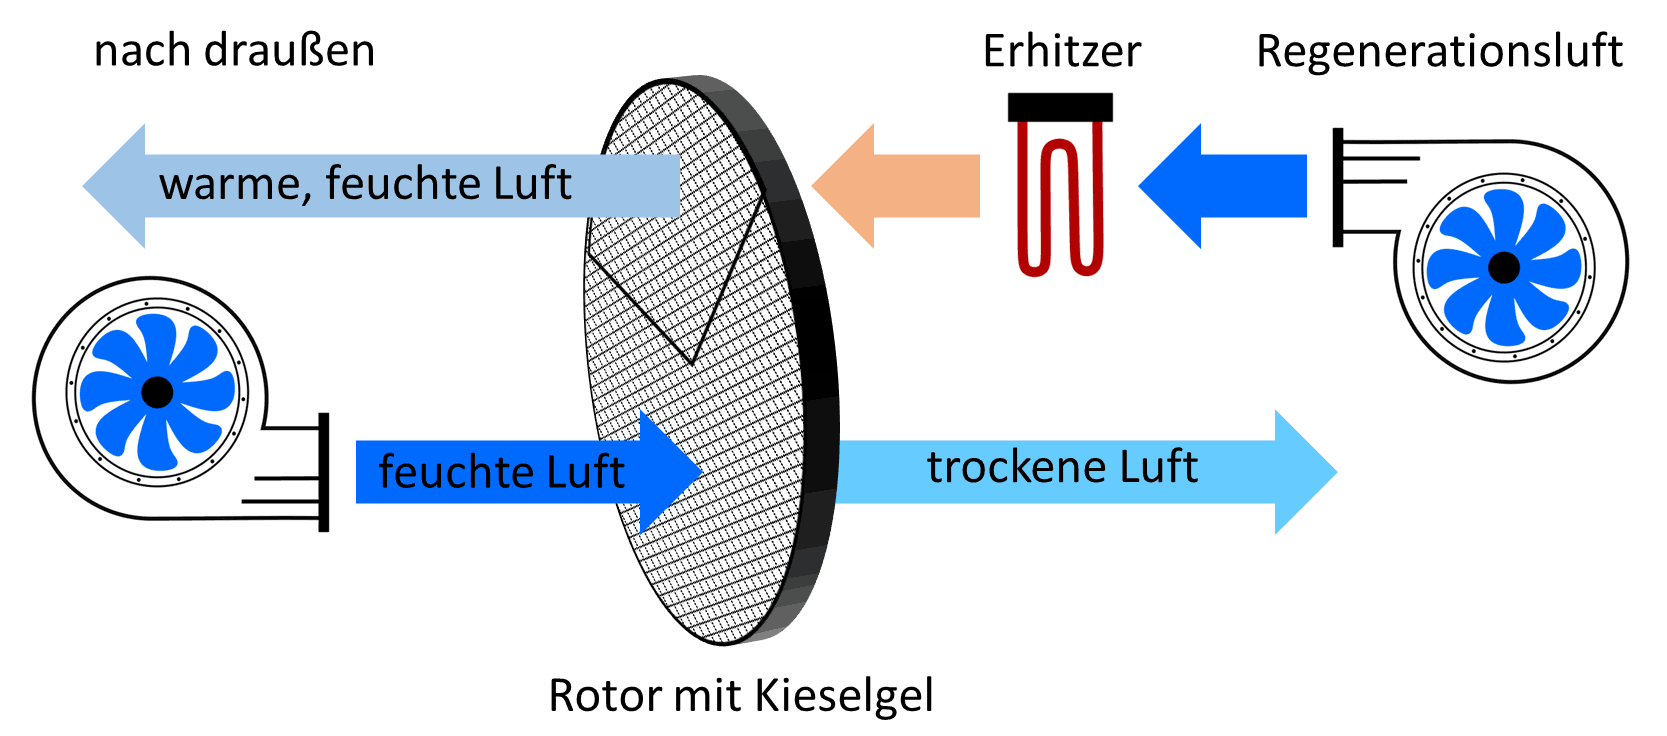 Prozessluft und Regenerationsluft strömt durch drehenden Rotor mit Kieselgel. Prozessluft wird getrocknet.